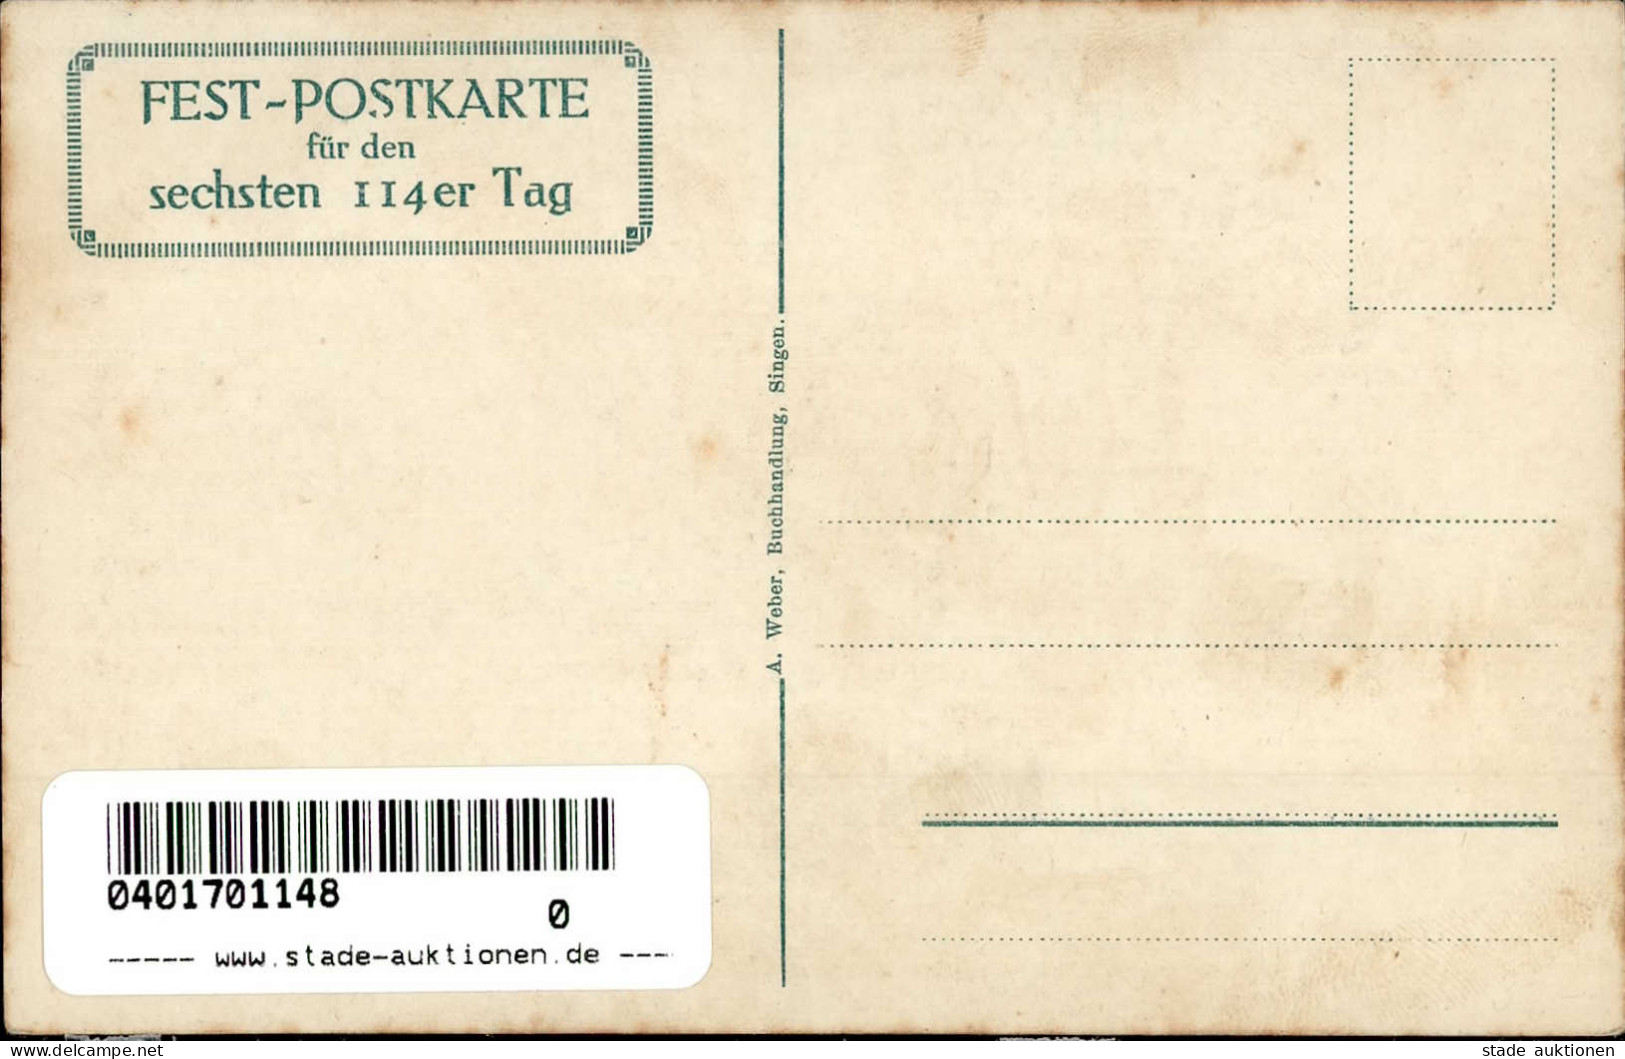 Singen (7700) Erinnerung An Das 40-jährige Bestehen Des Kriegerbundes 11. Bis 13. Juli 1914 Sign. W. Kern I-II - Karlsruhe